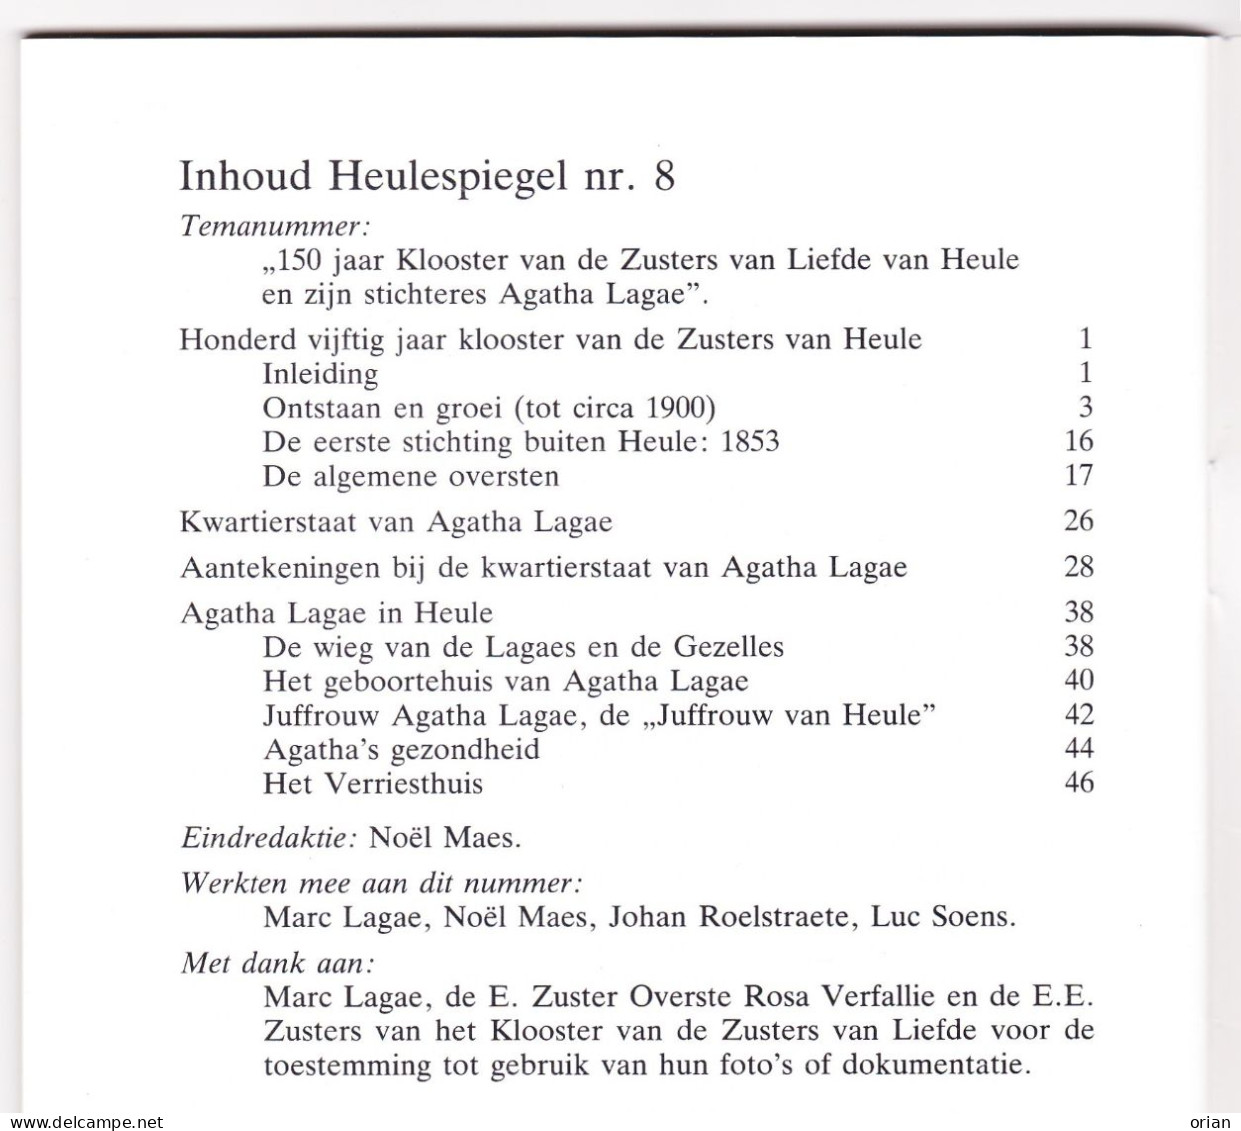 2 X Heulespiegel - Heemkundige Bijdrage - Tijdschriftjes Nrs 8 & 9 Uit 1988 - 150 Jaar Klooster Zrs V Liefde Heule - Geschichte